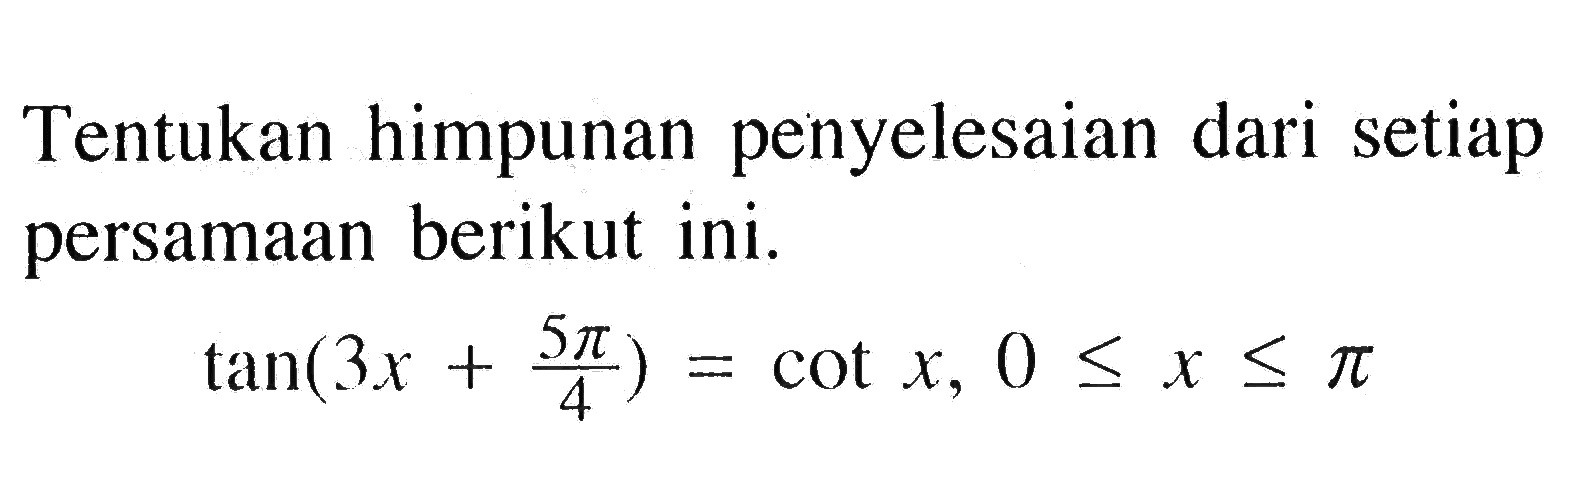 Tentukan himpunan penyelesaian dari setiap persamaan berikut ini. tan (3x+5 pi/4)=cot x, 0<= x<=pi  